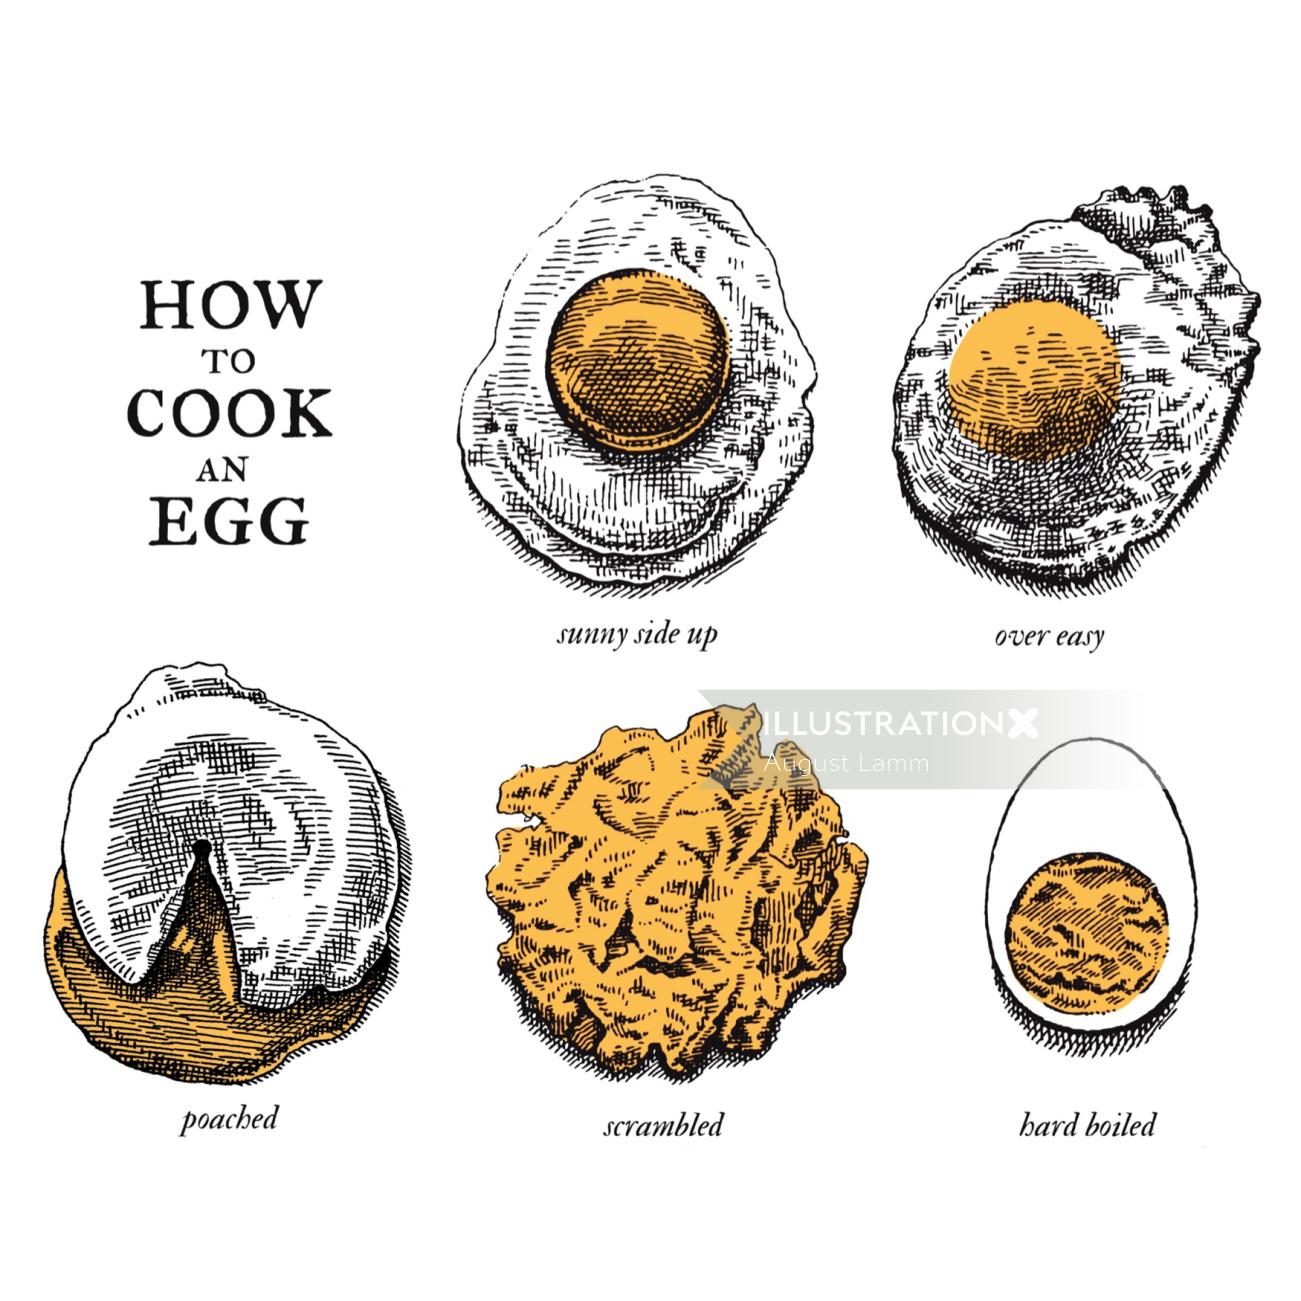 书籍封面图，介绍如何煮鸡蛋